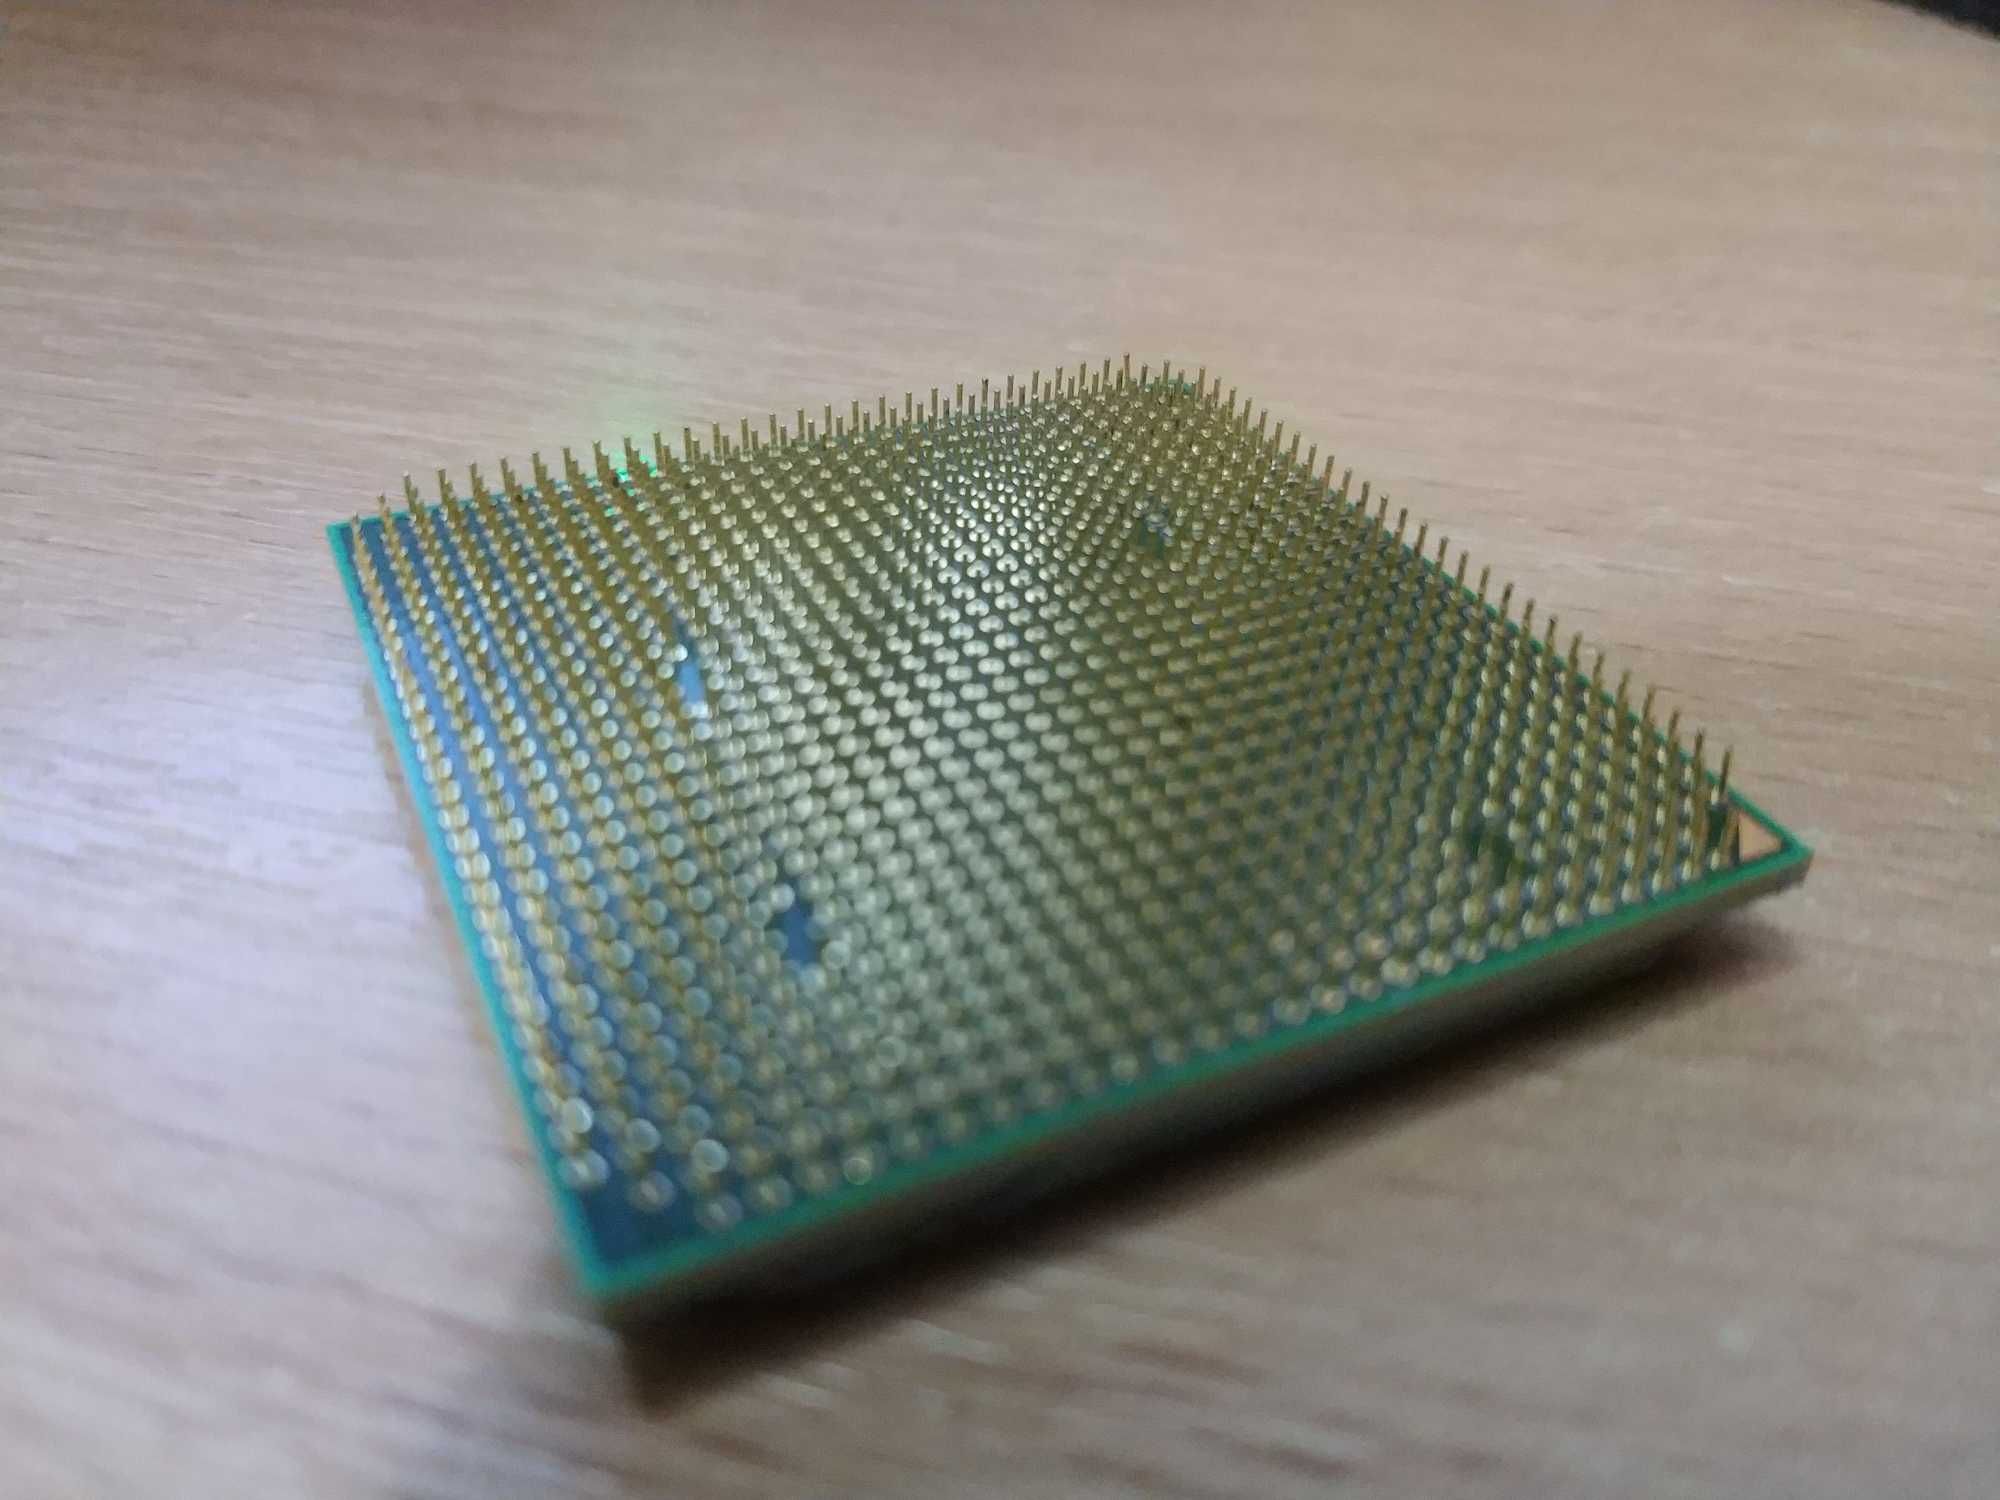 AMD Athlon 64 LE-1640  2.6 Ghz (AM2) + DDR2 x2 512mb